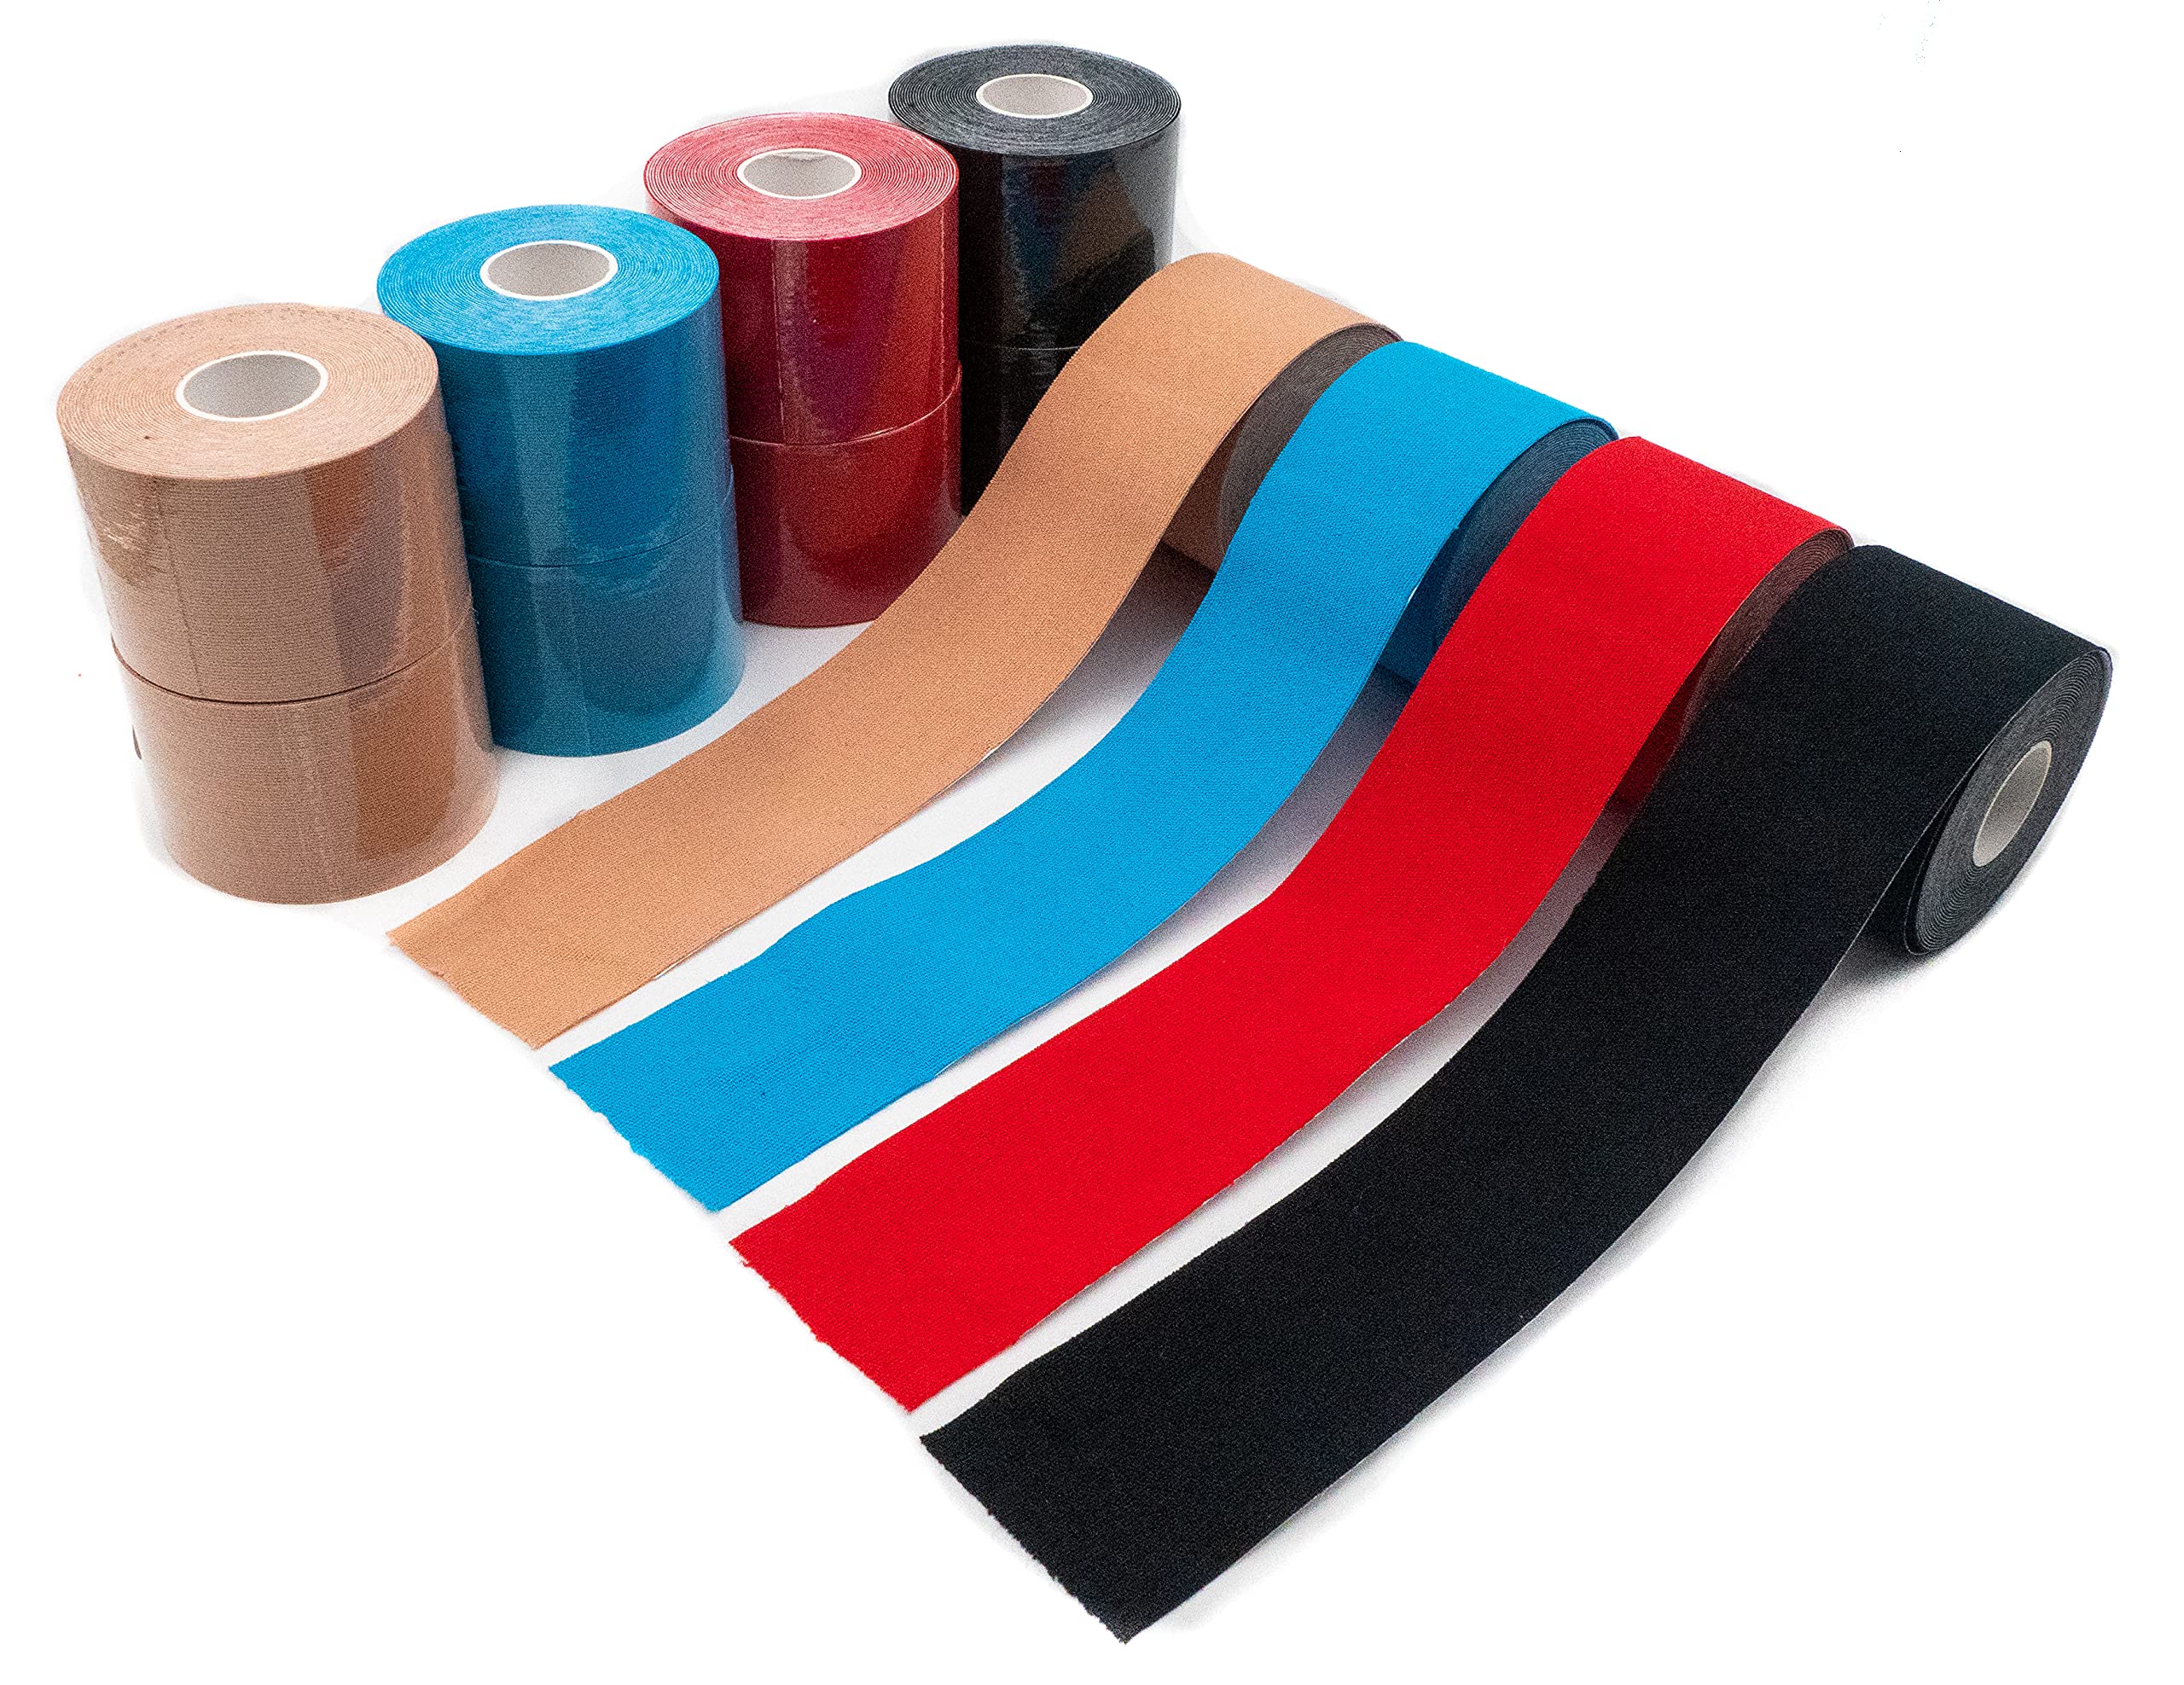 axion Kinesiologie Tapes 12er Misch-Set rot, blau, schwarz, beige | Wasserfeste • hautfreundliche • elastische • selbstklebende Fitness Bandage | Physio-tape optimal für Sport & Alltag - axion